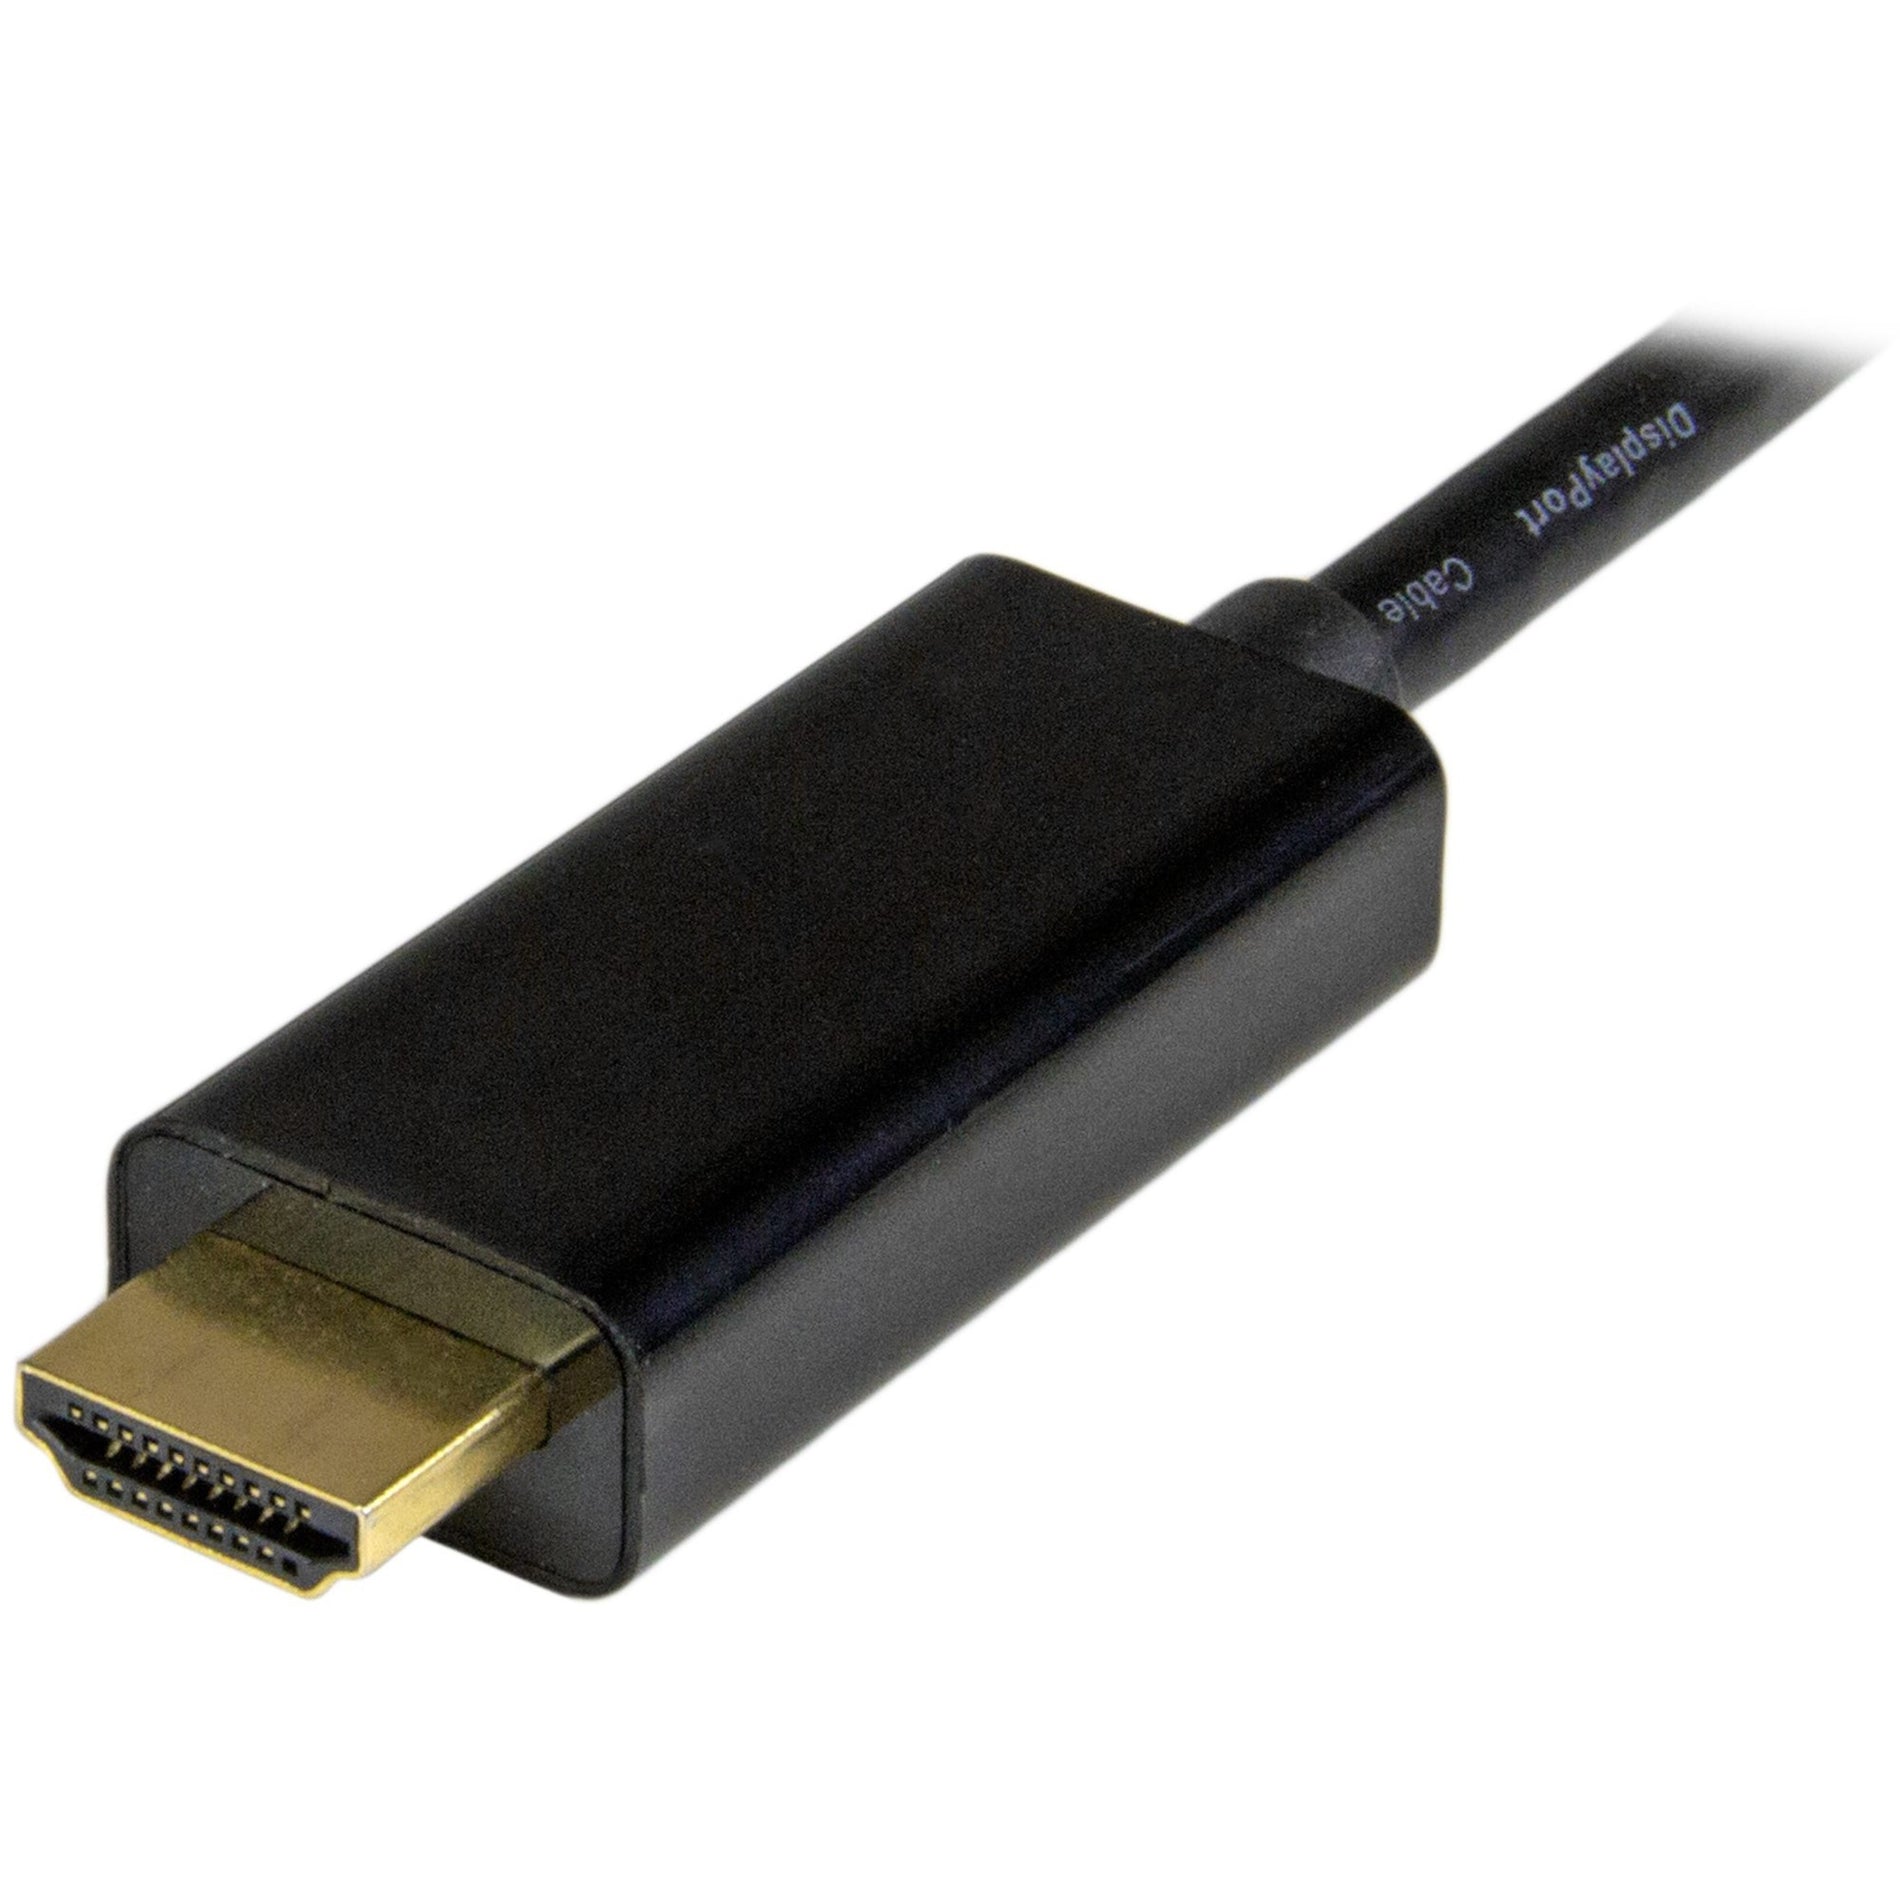 ستارتك.كوم MDP2HDMM5MB كابل تحويل مصغر من منفذ العرض إلى HDMI - 5 م (15 قدم) Ultra HD 4K 30Hz ستارتك.كوم  ستارتك.كوم